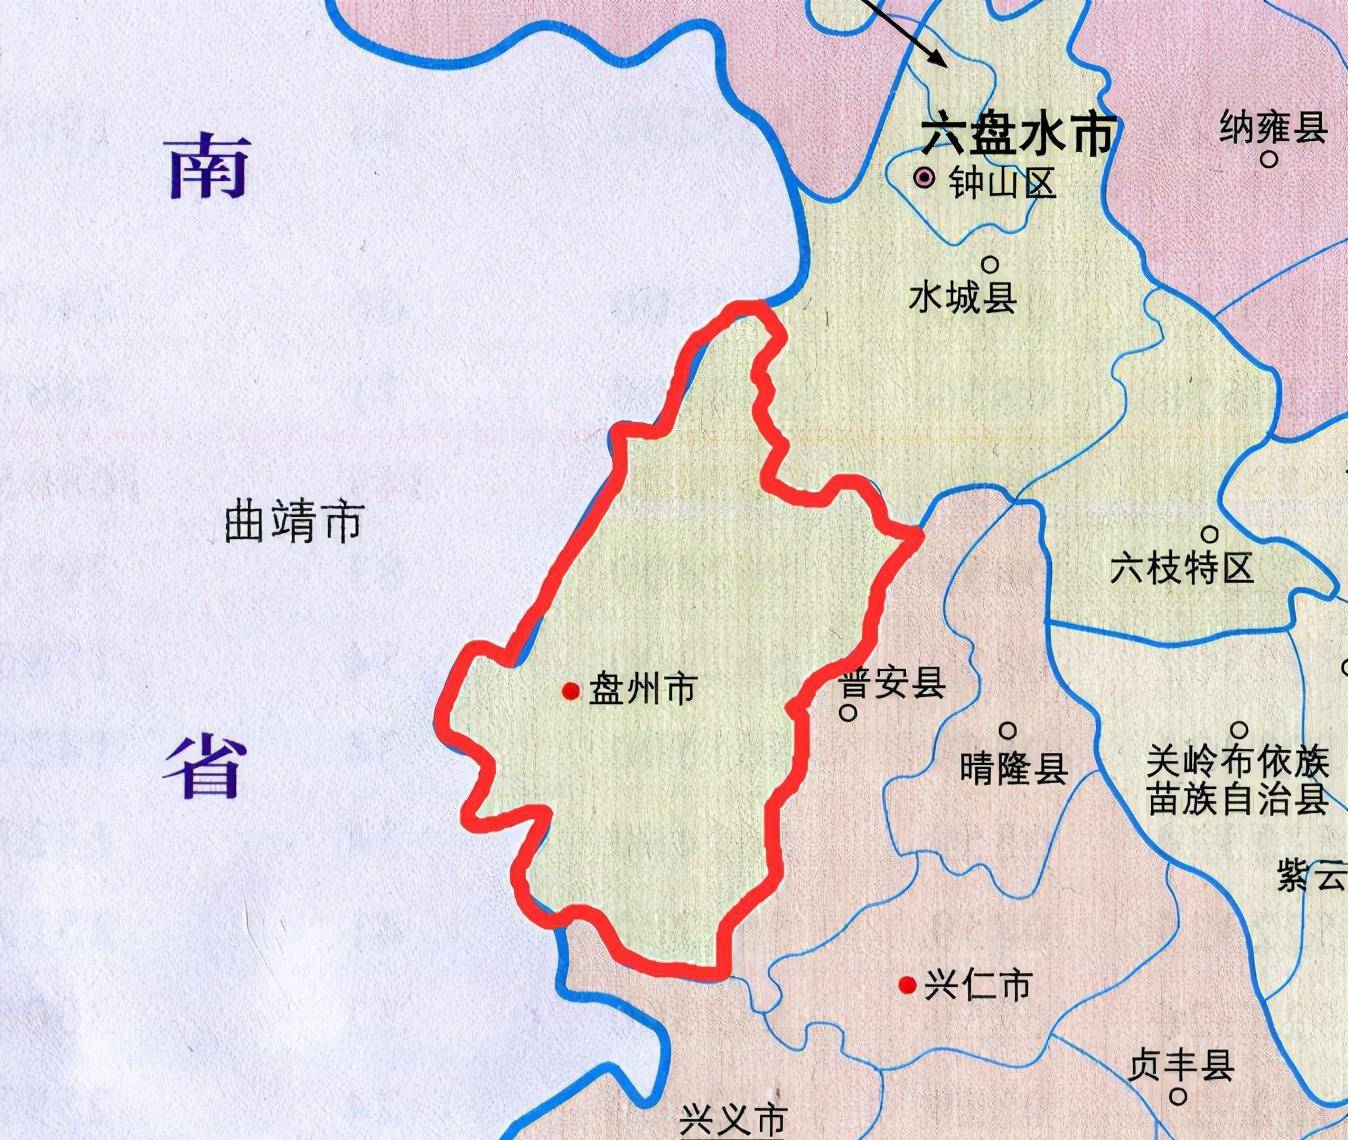 贵州第二人口大县:人口超130万,面积全省第三